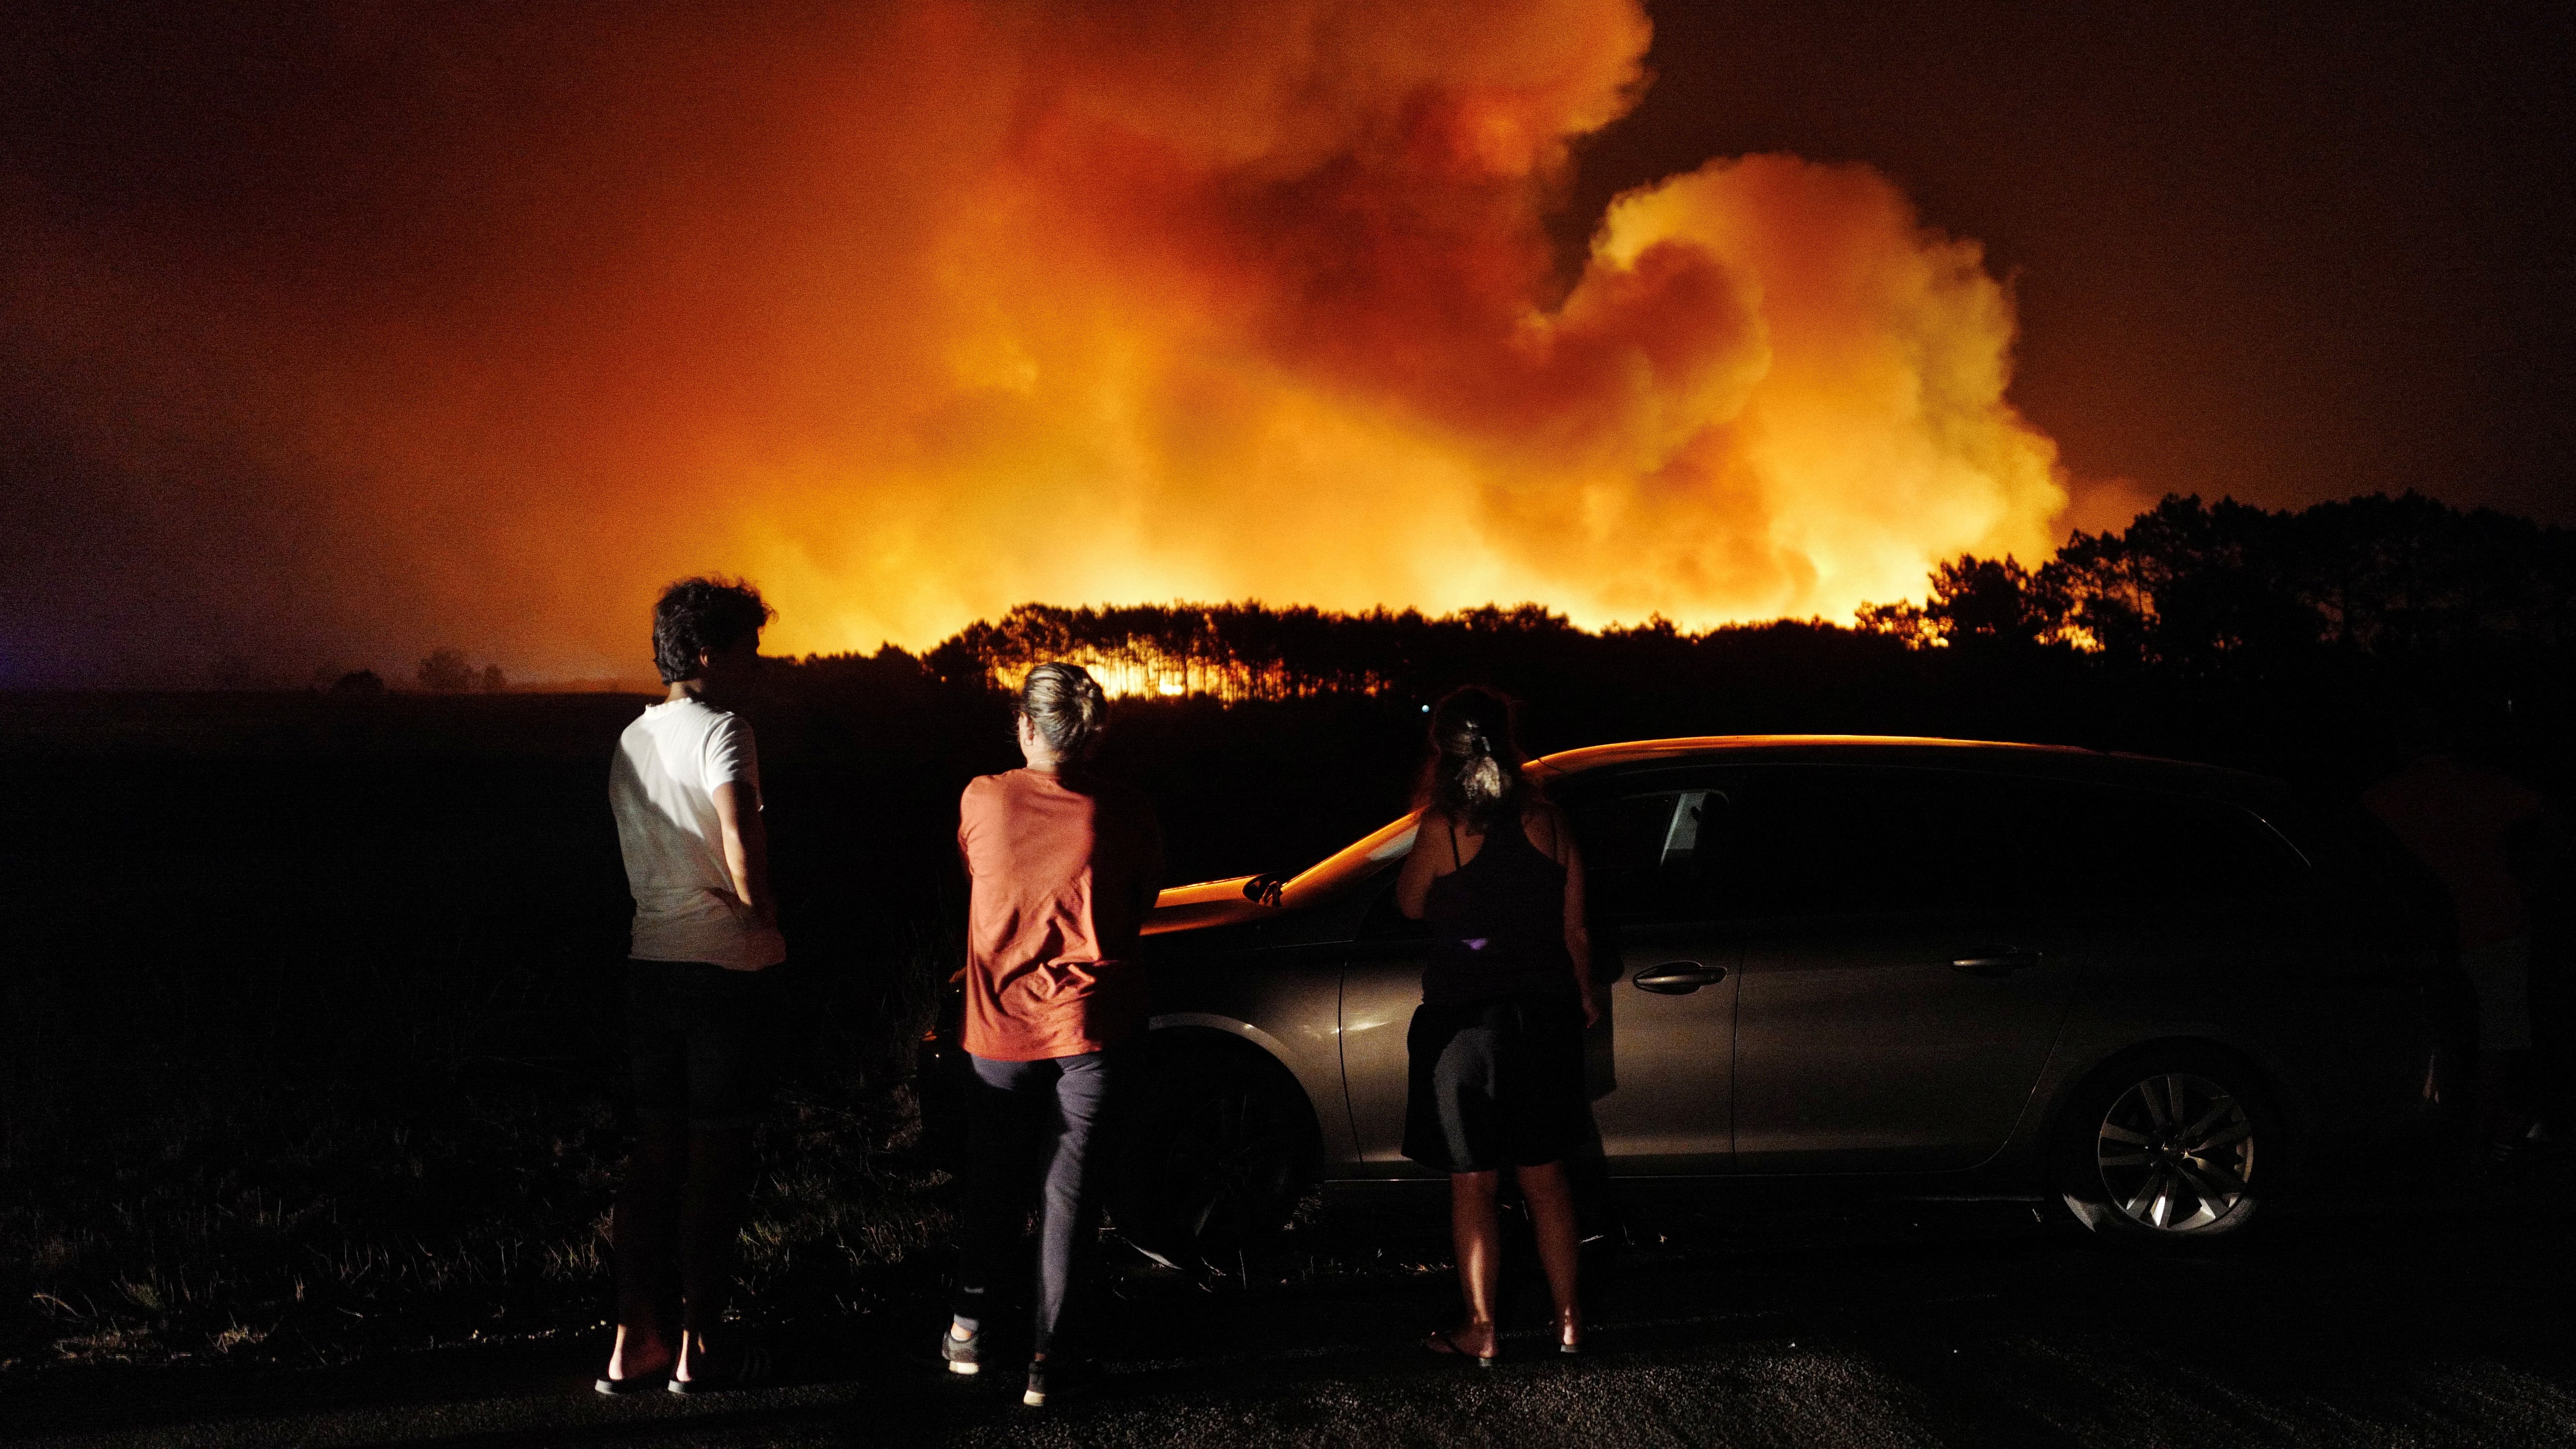 People watch a wildfire in Aljesur, Portugal, 7 August